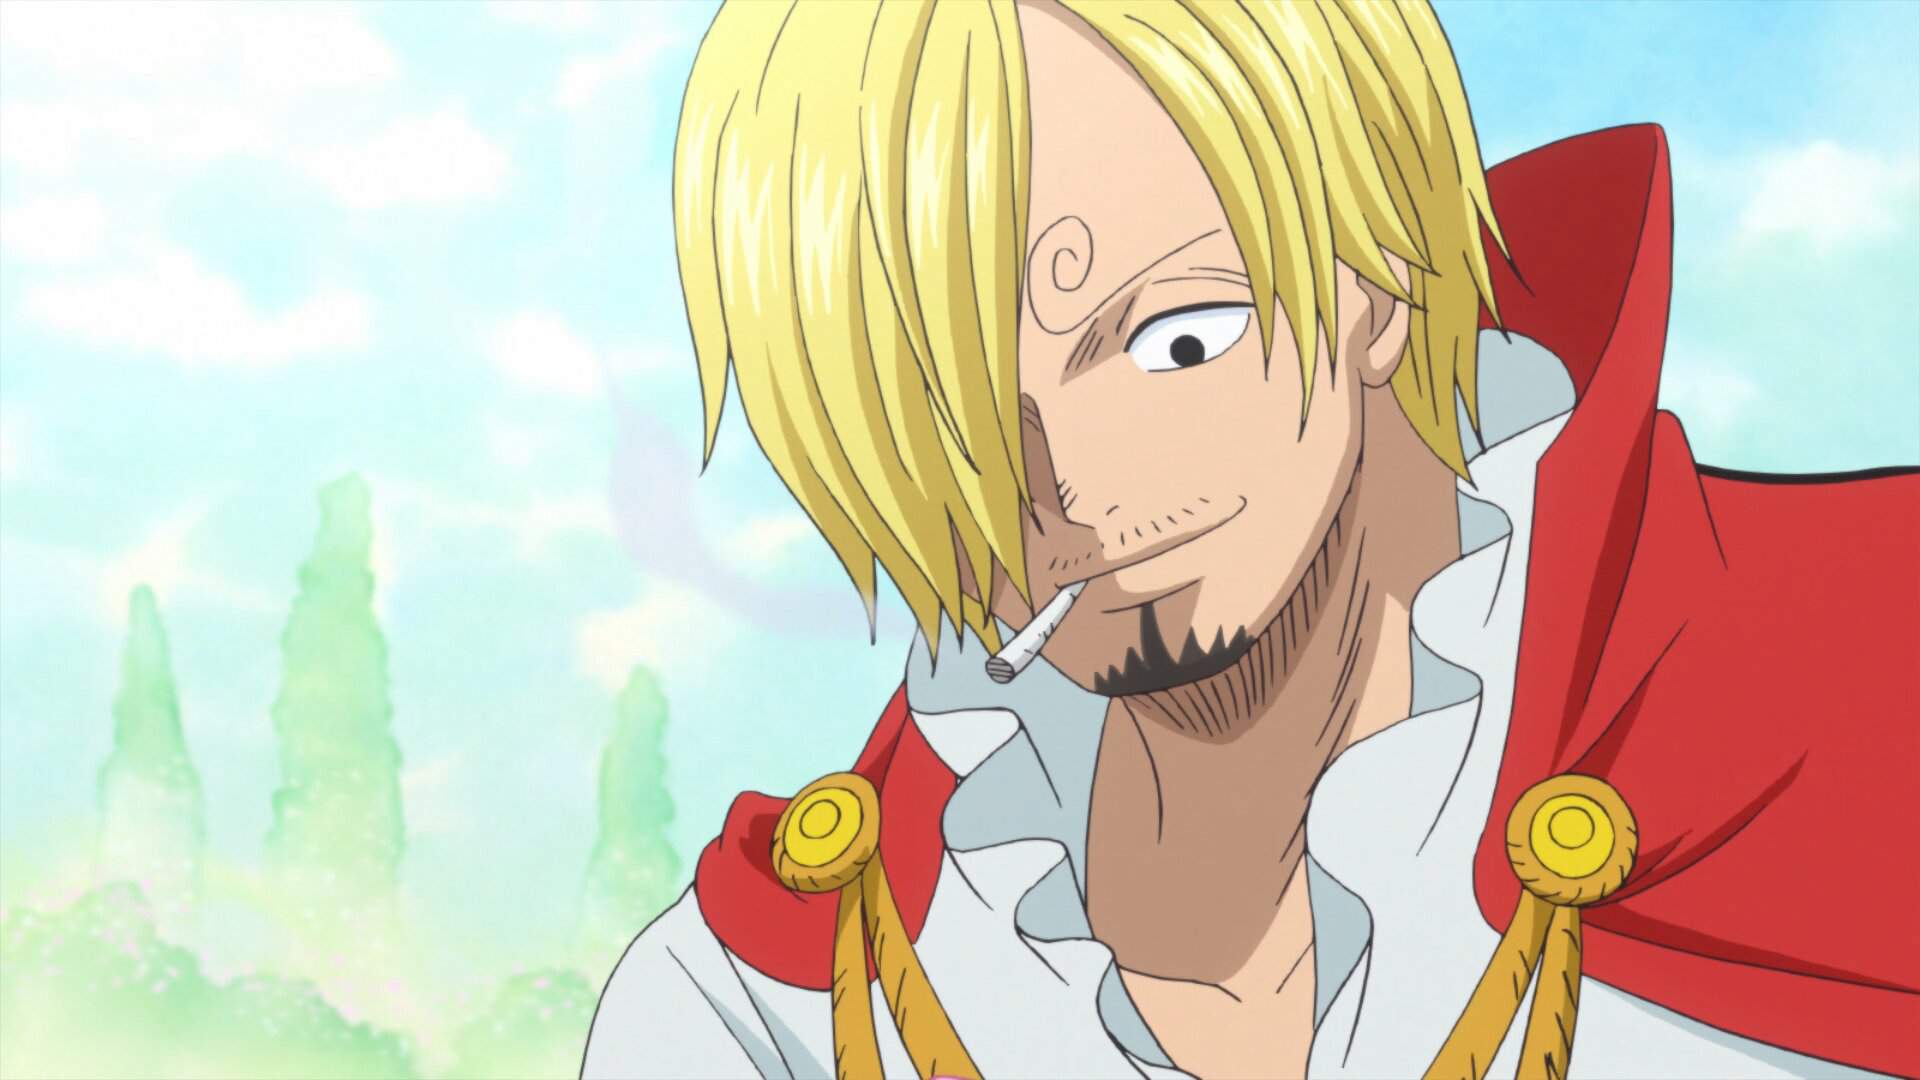 Арка тортленд Wiki Ван Пис/One Piece RUS Amino.